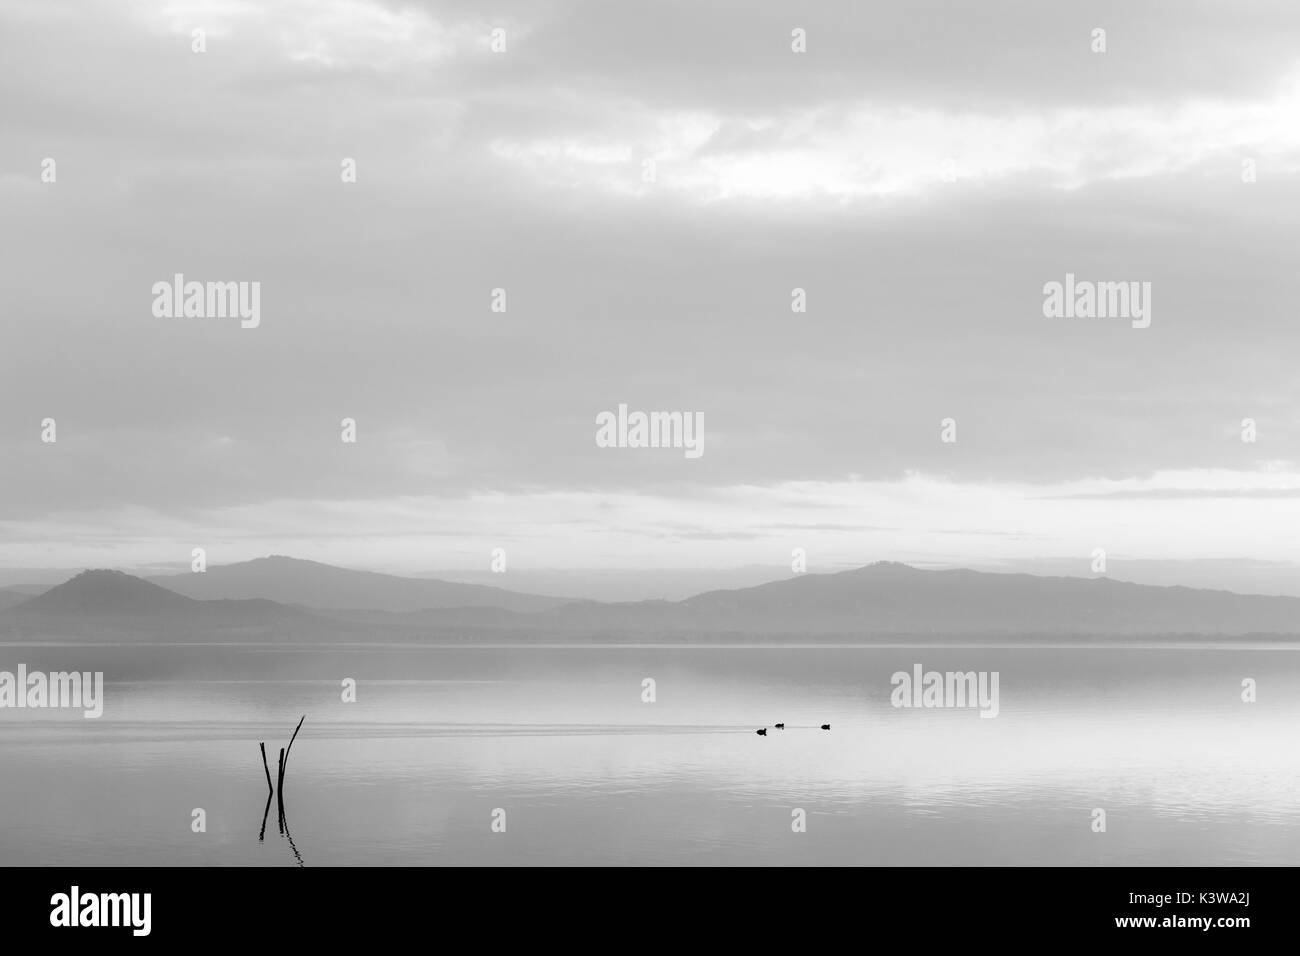 Un lac au crépuscule, avec des tons doux, des collines et montagnes, certains canards sur l'eau et des poteaux en bois au premier plan Banque D'Images